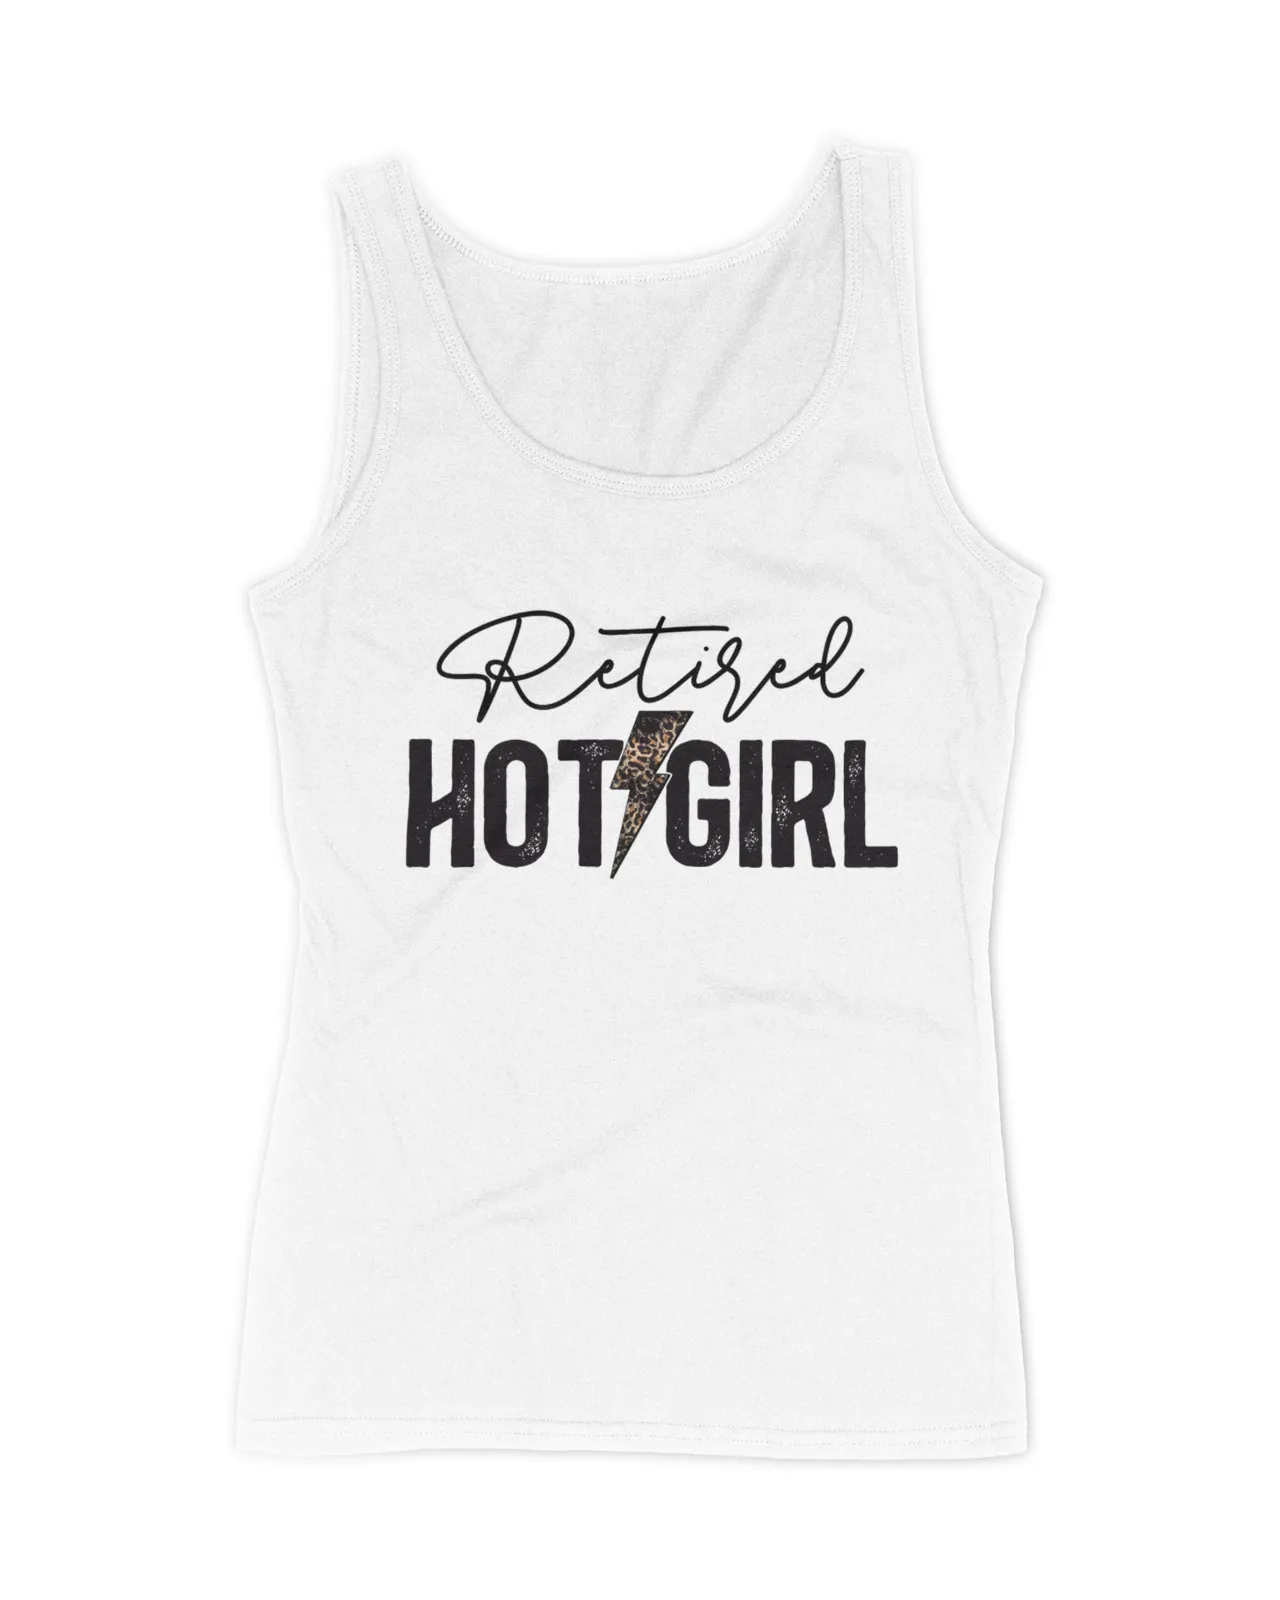 Retired Hot Girl Shirt